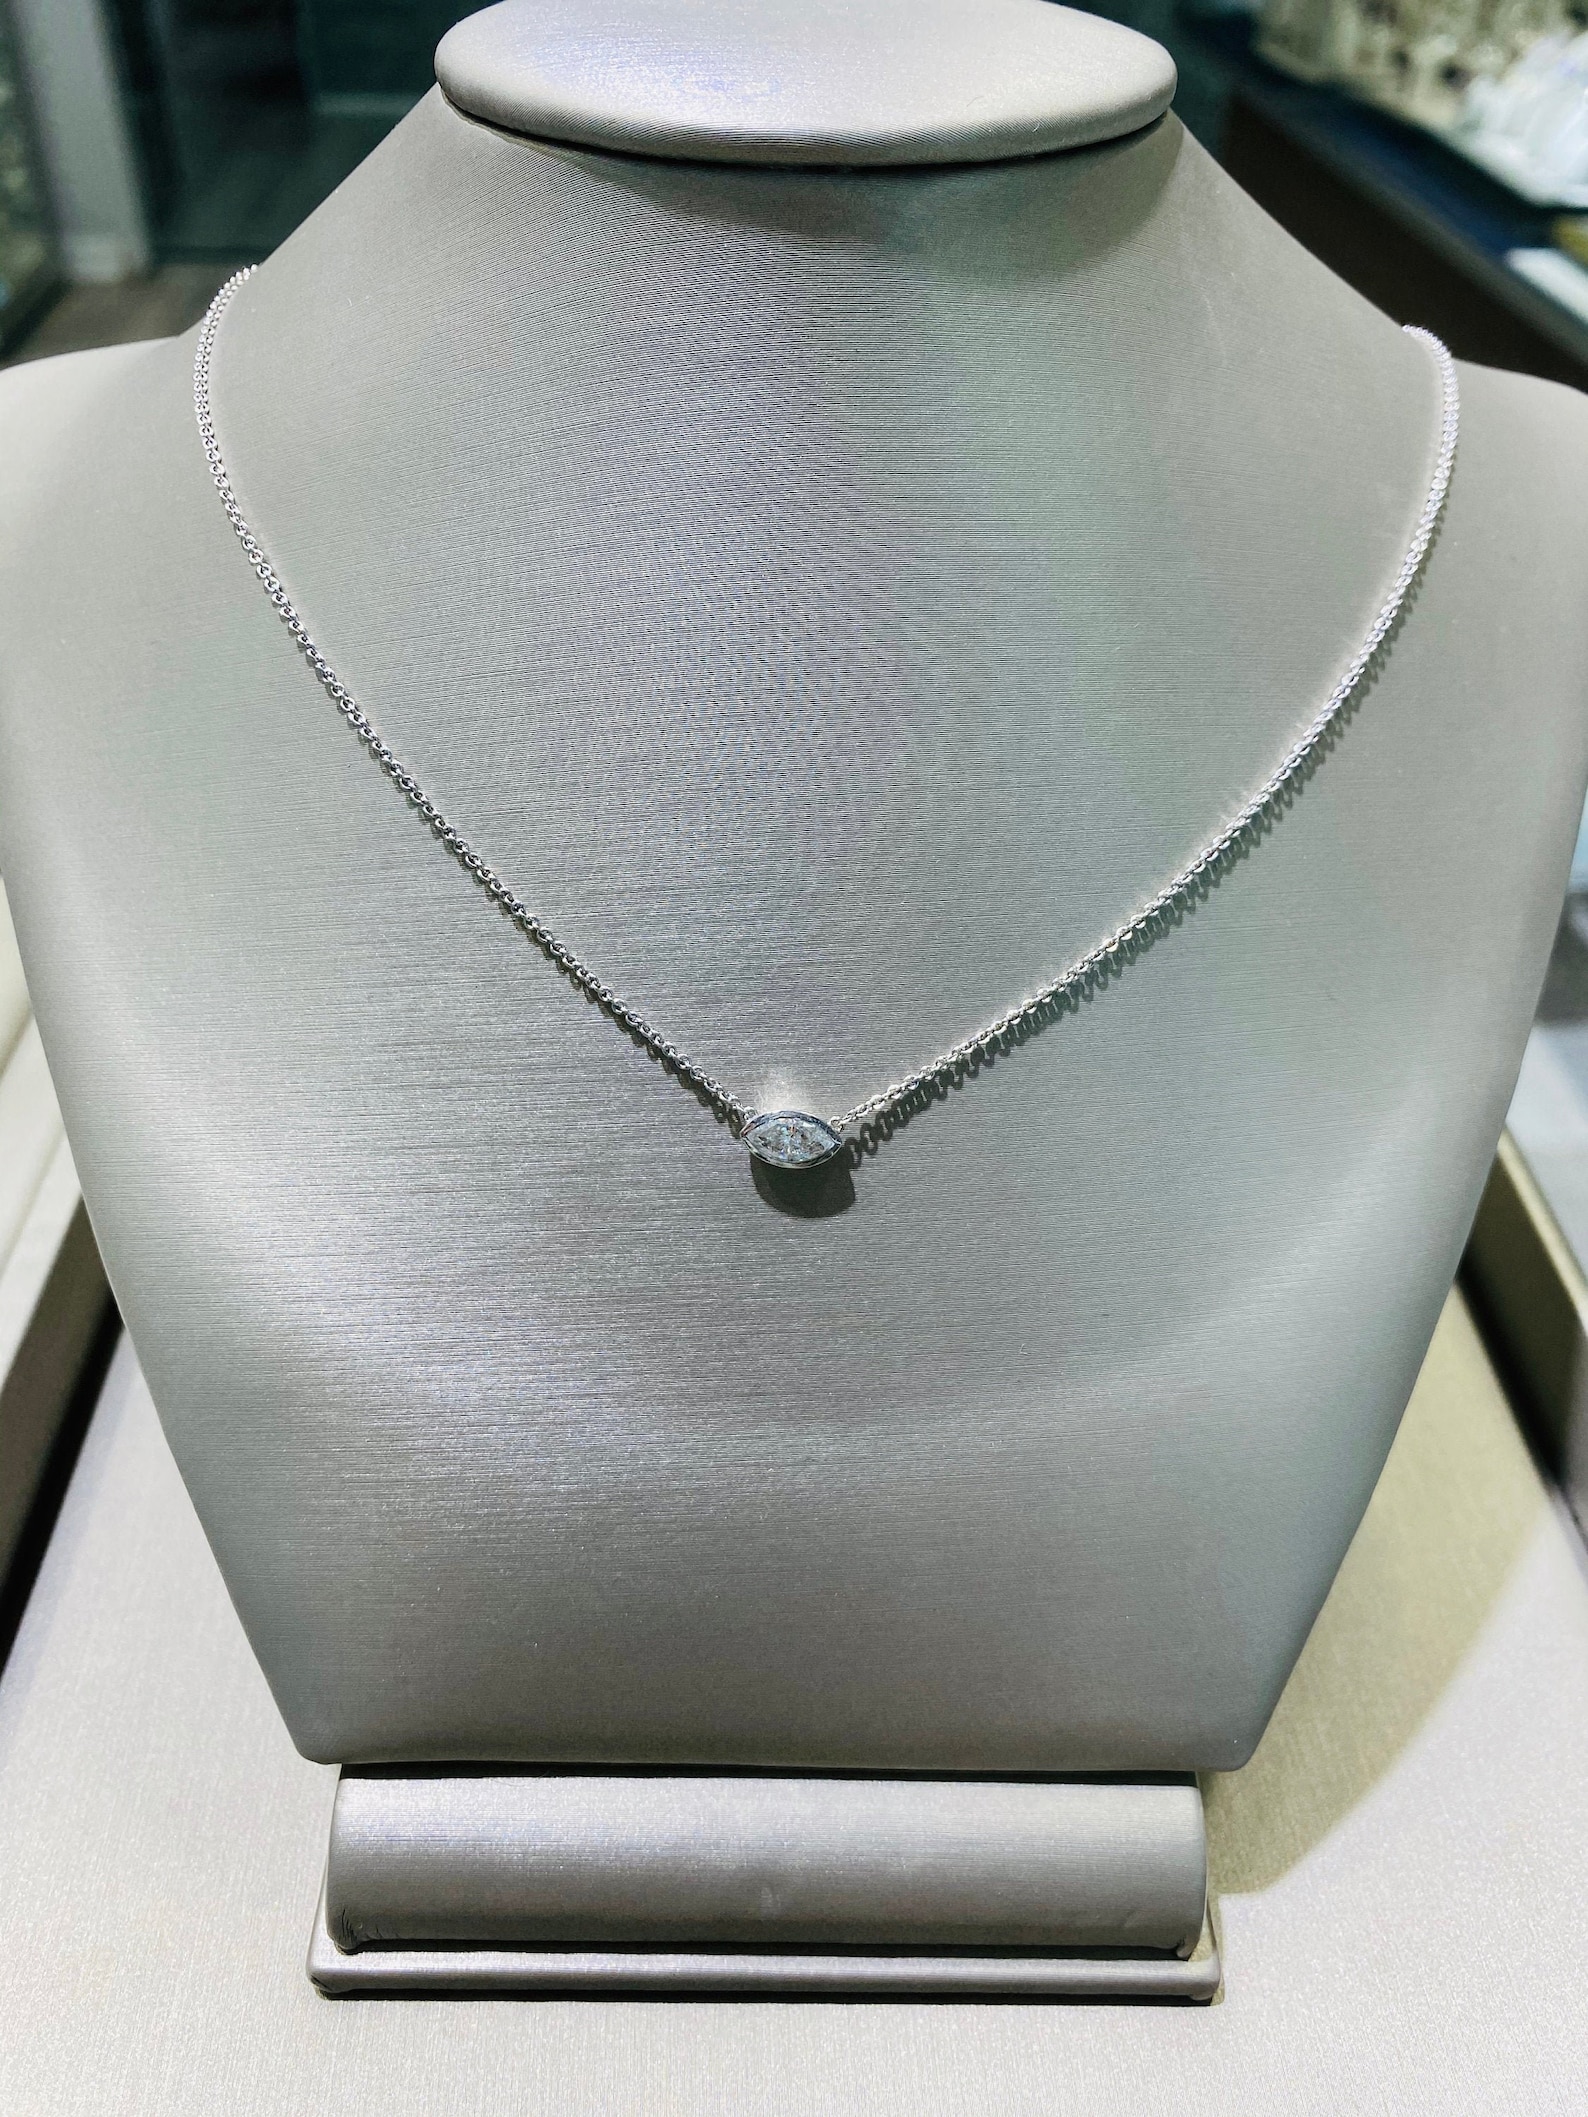 Marquise shaped diamond pendant bezel set necklace set | Etsy